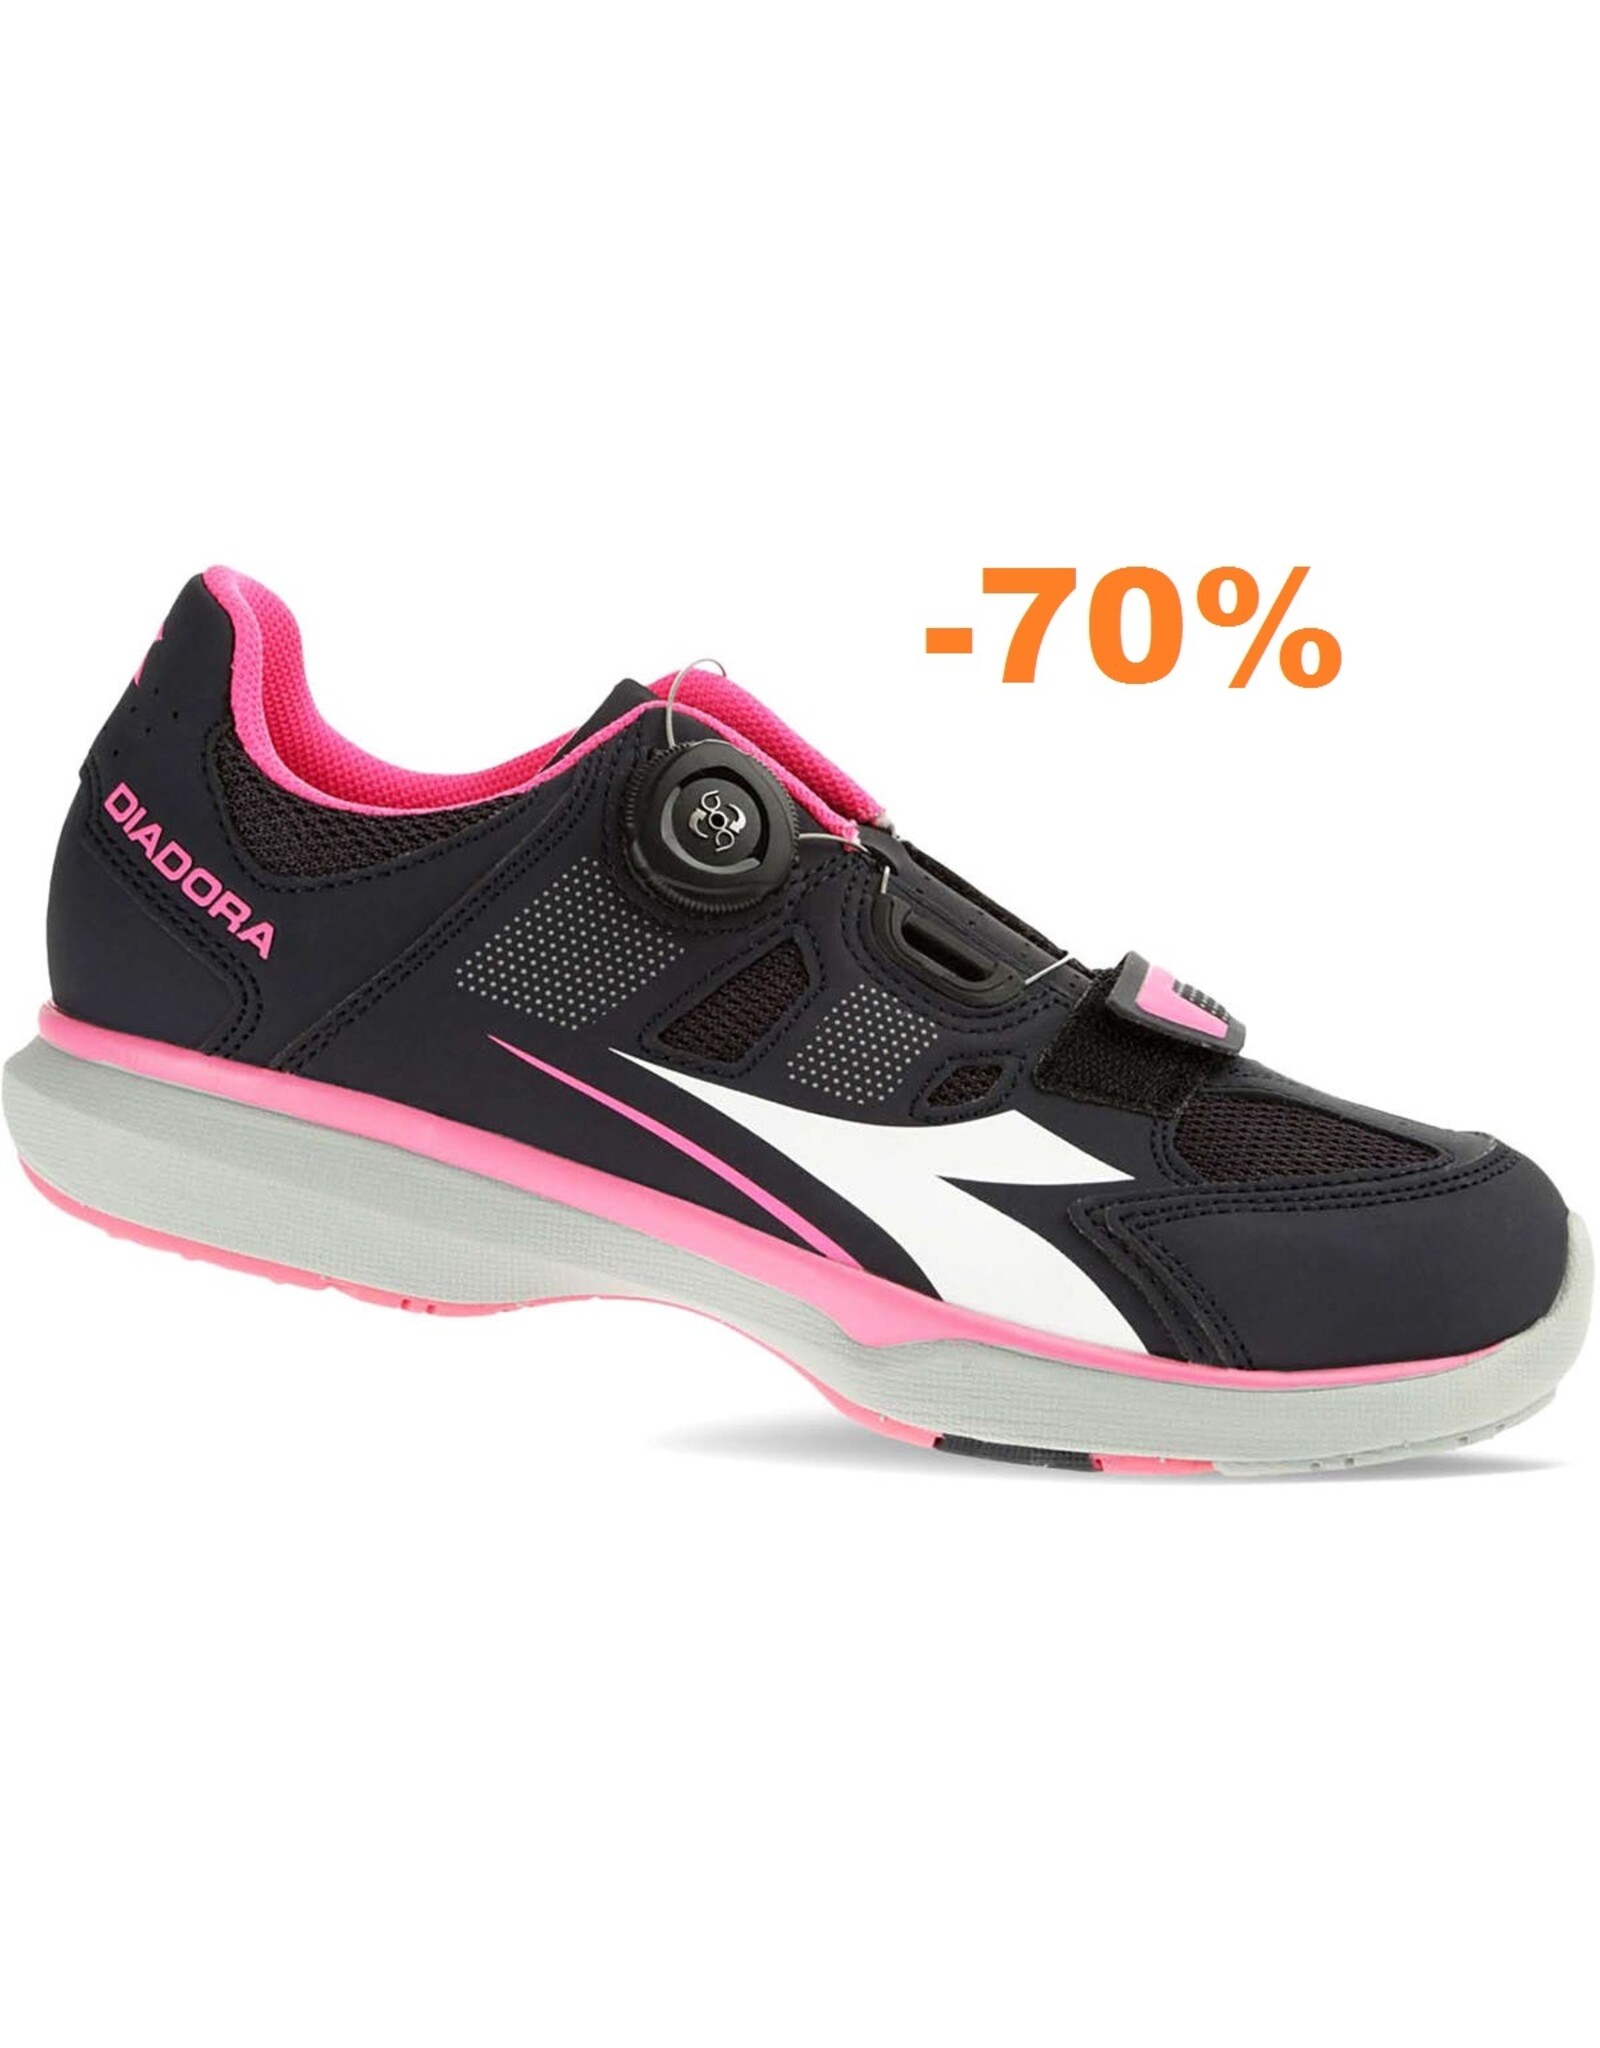 Diadora Shoes Diadora Gym F black/pink #36